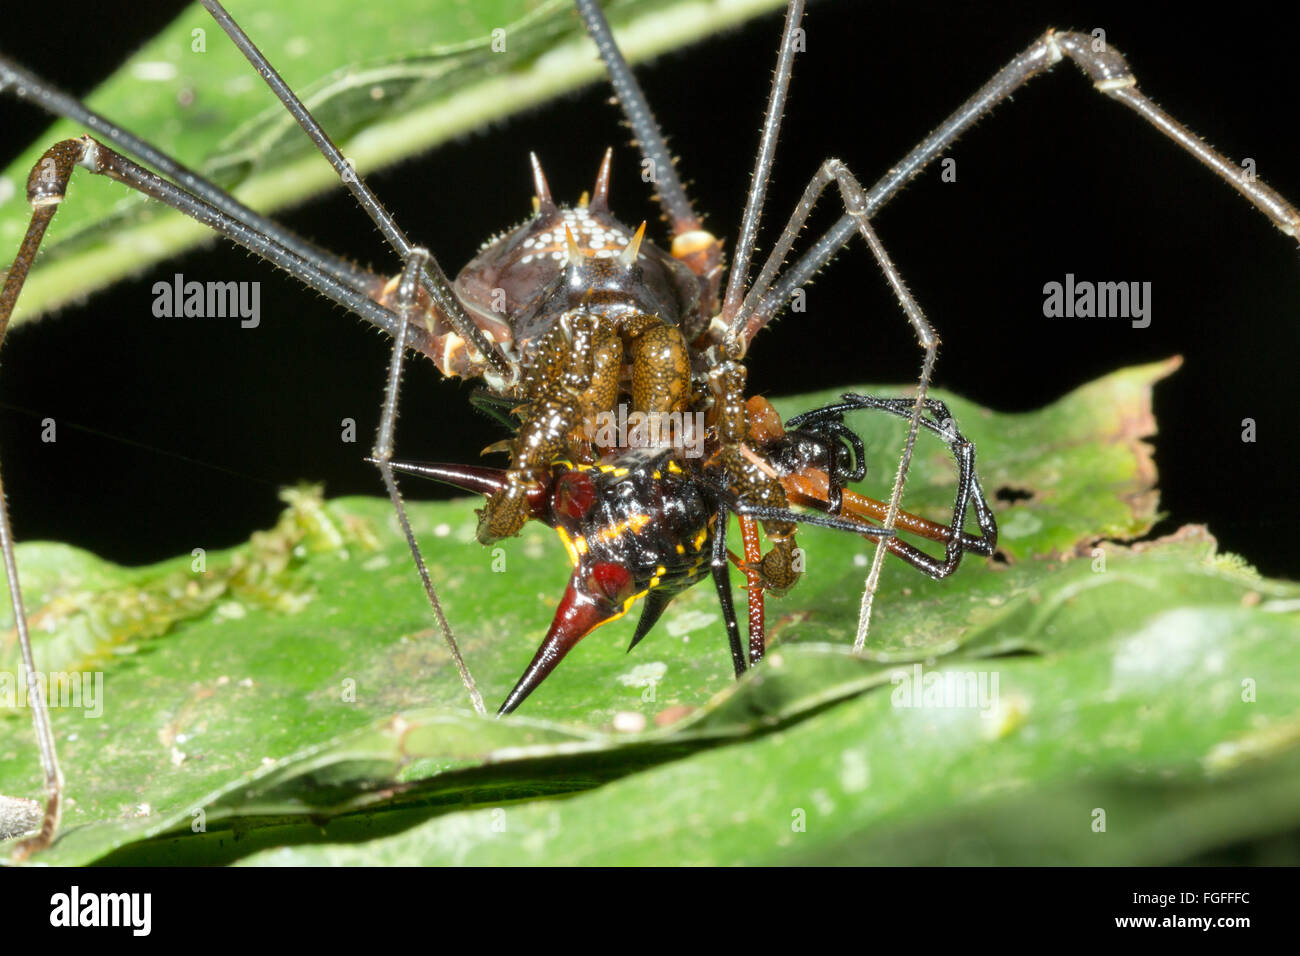 Harvestman tropical géant (Phalangid) se nourrissent d'une araignée épineuse (Micranthena sp.) dans la forêt tropicale, Pastaza province, l'Équateur Banque D'Images